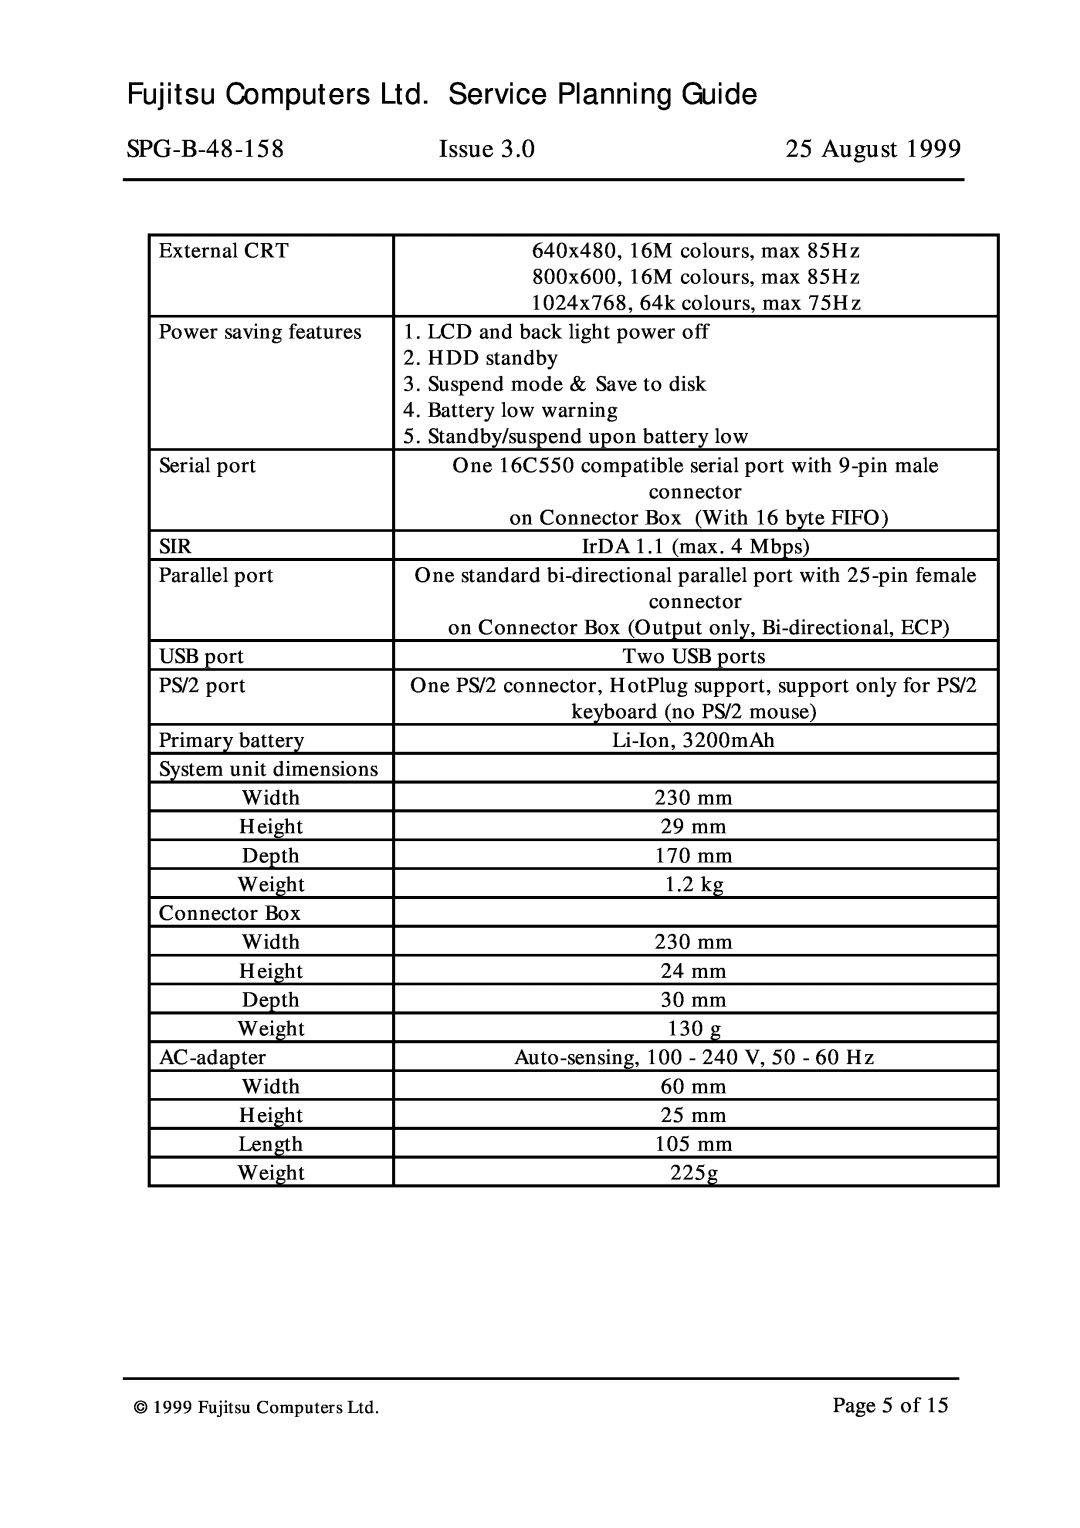 Fujitsu SPG-B-48-158 warranty Issue, August 